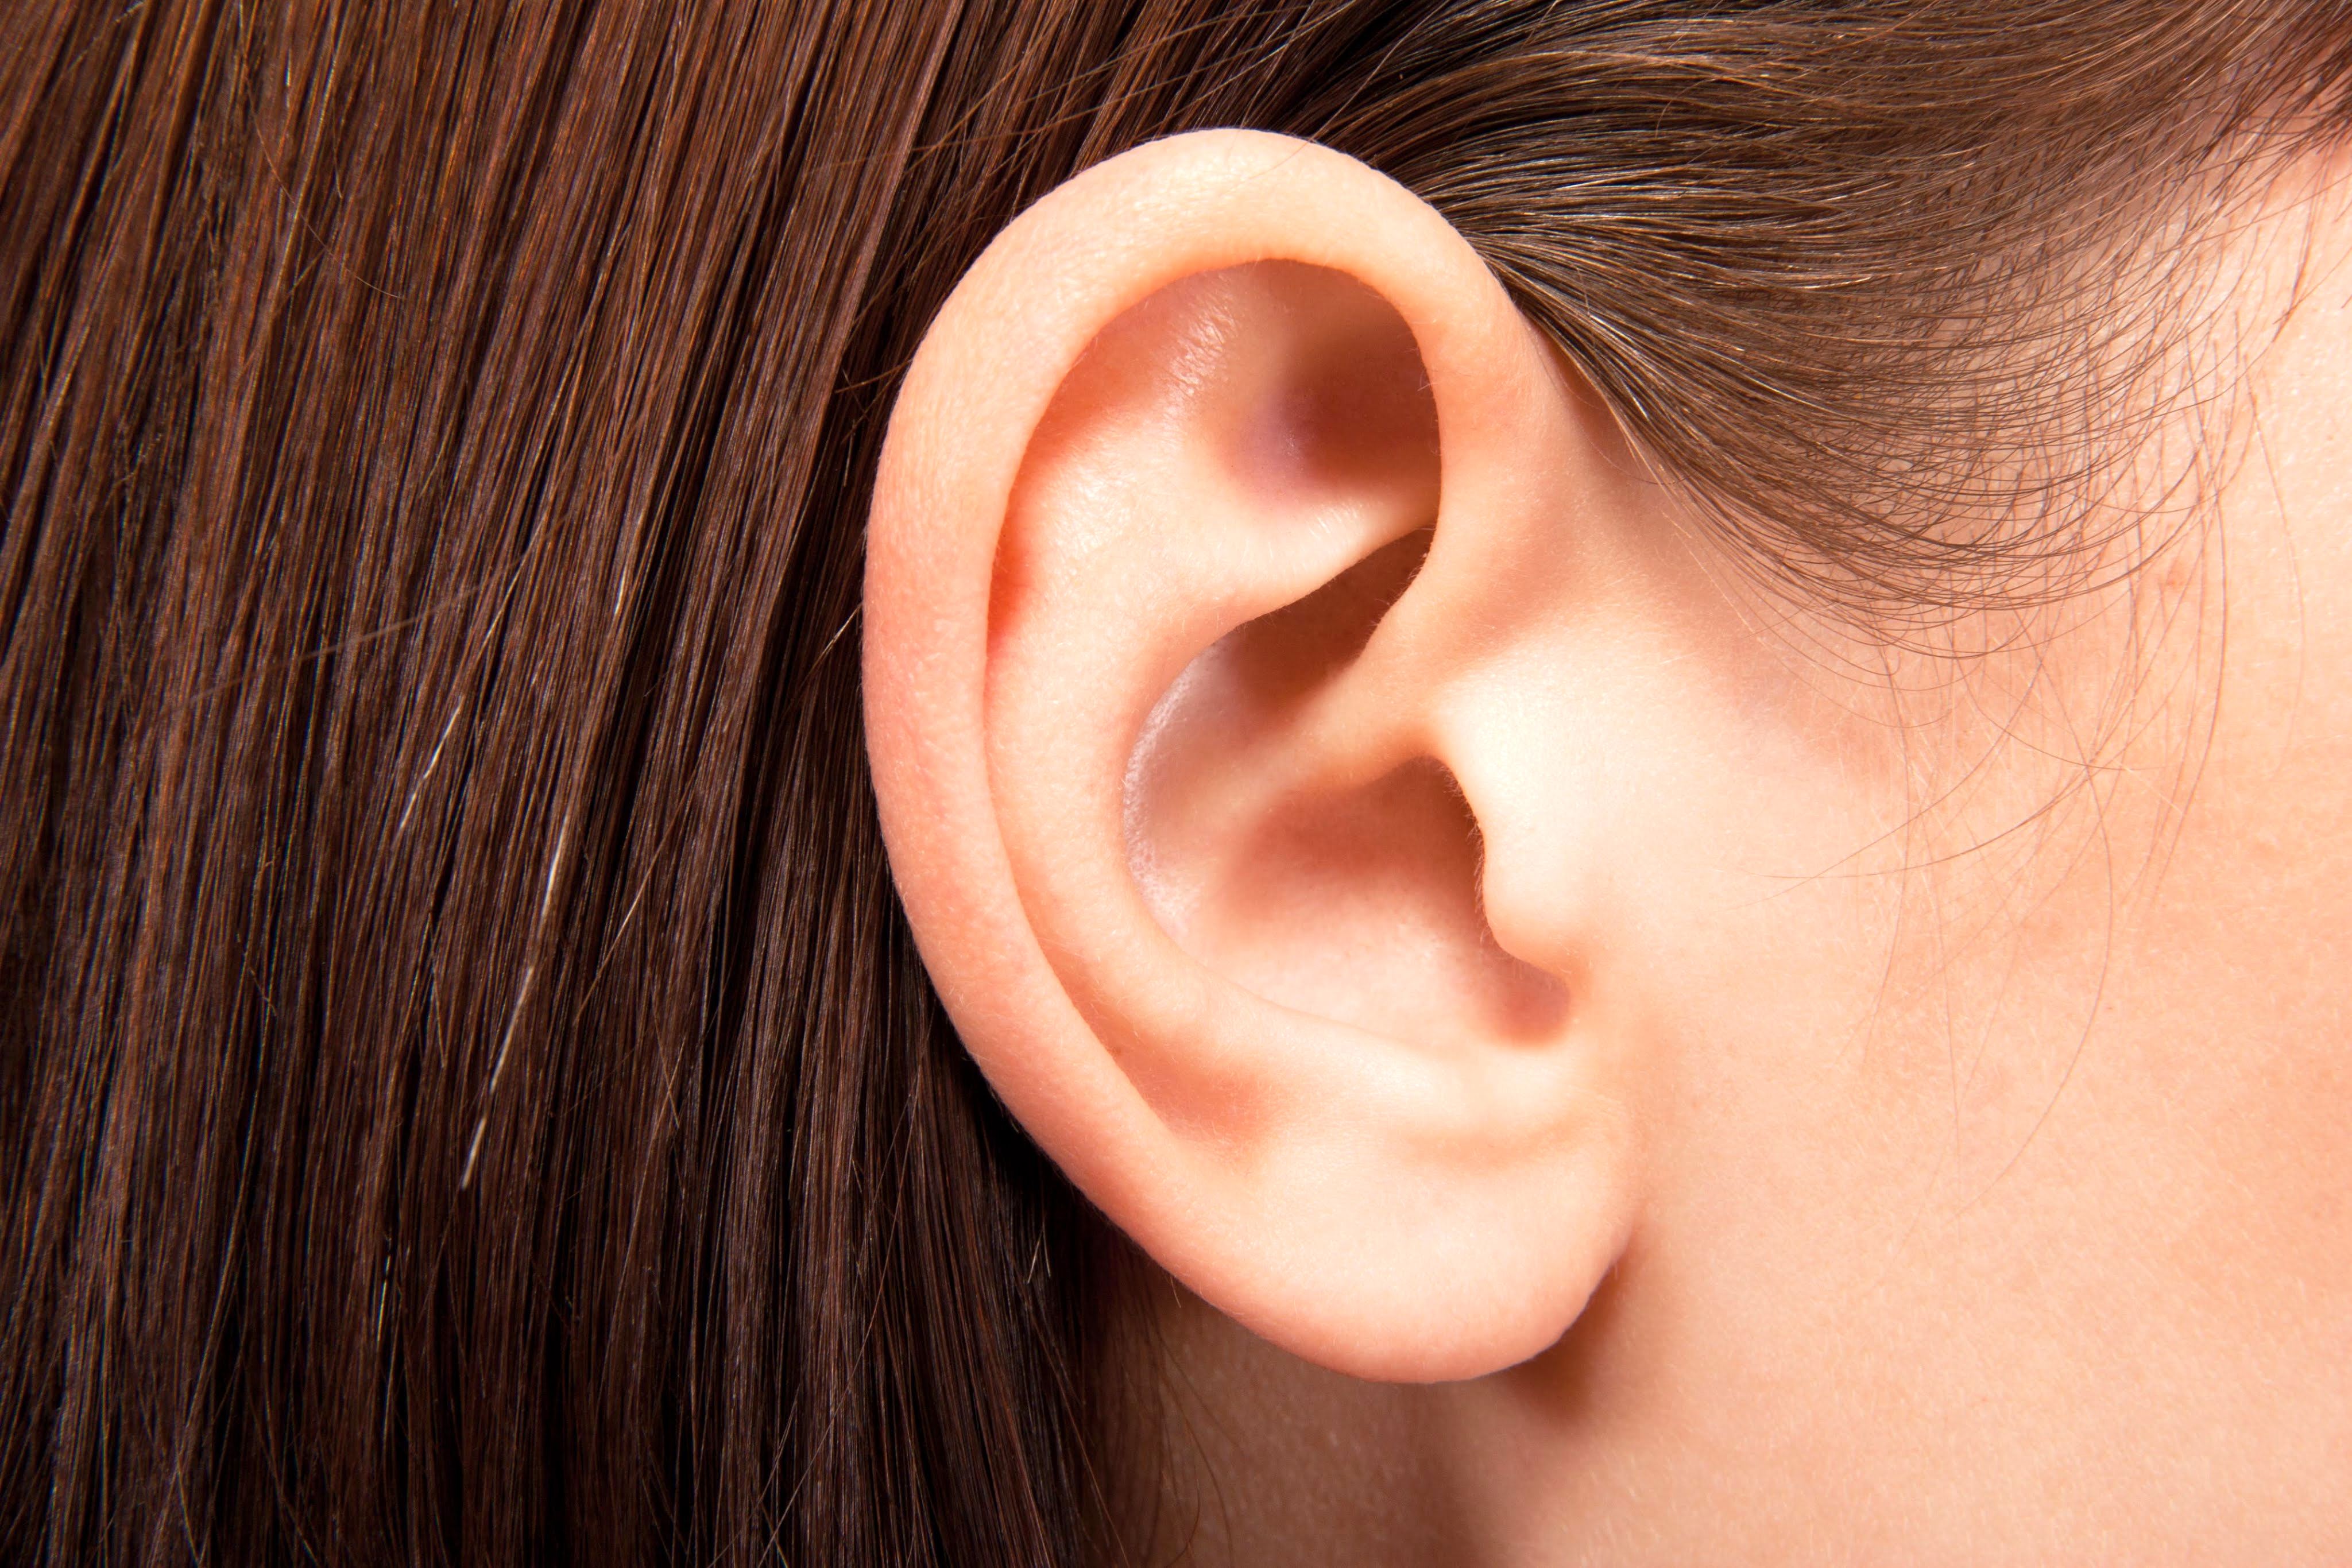 سیستم شنوایی و طریقه محافظت از آن